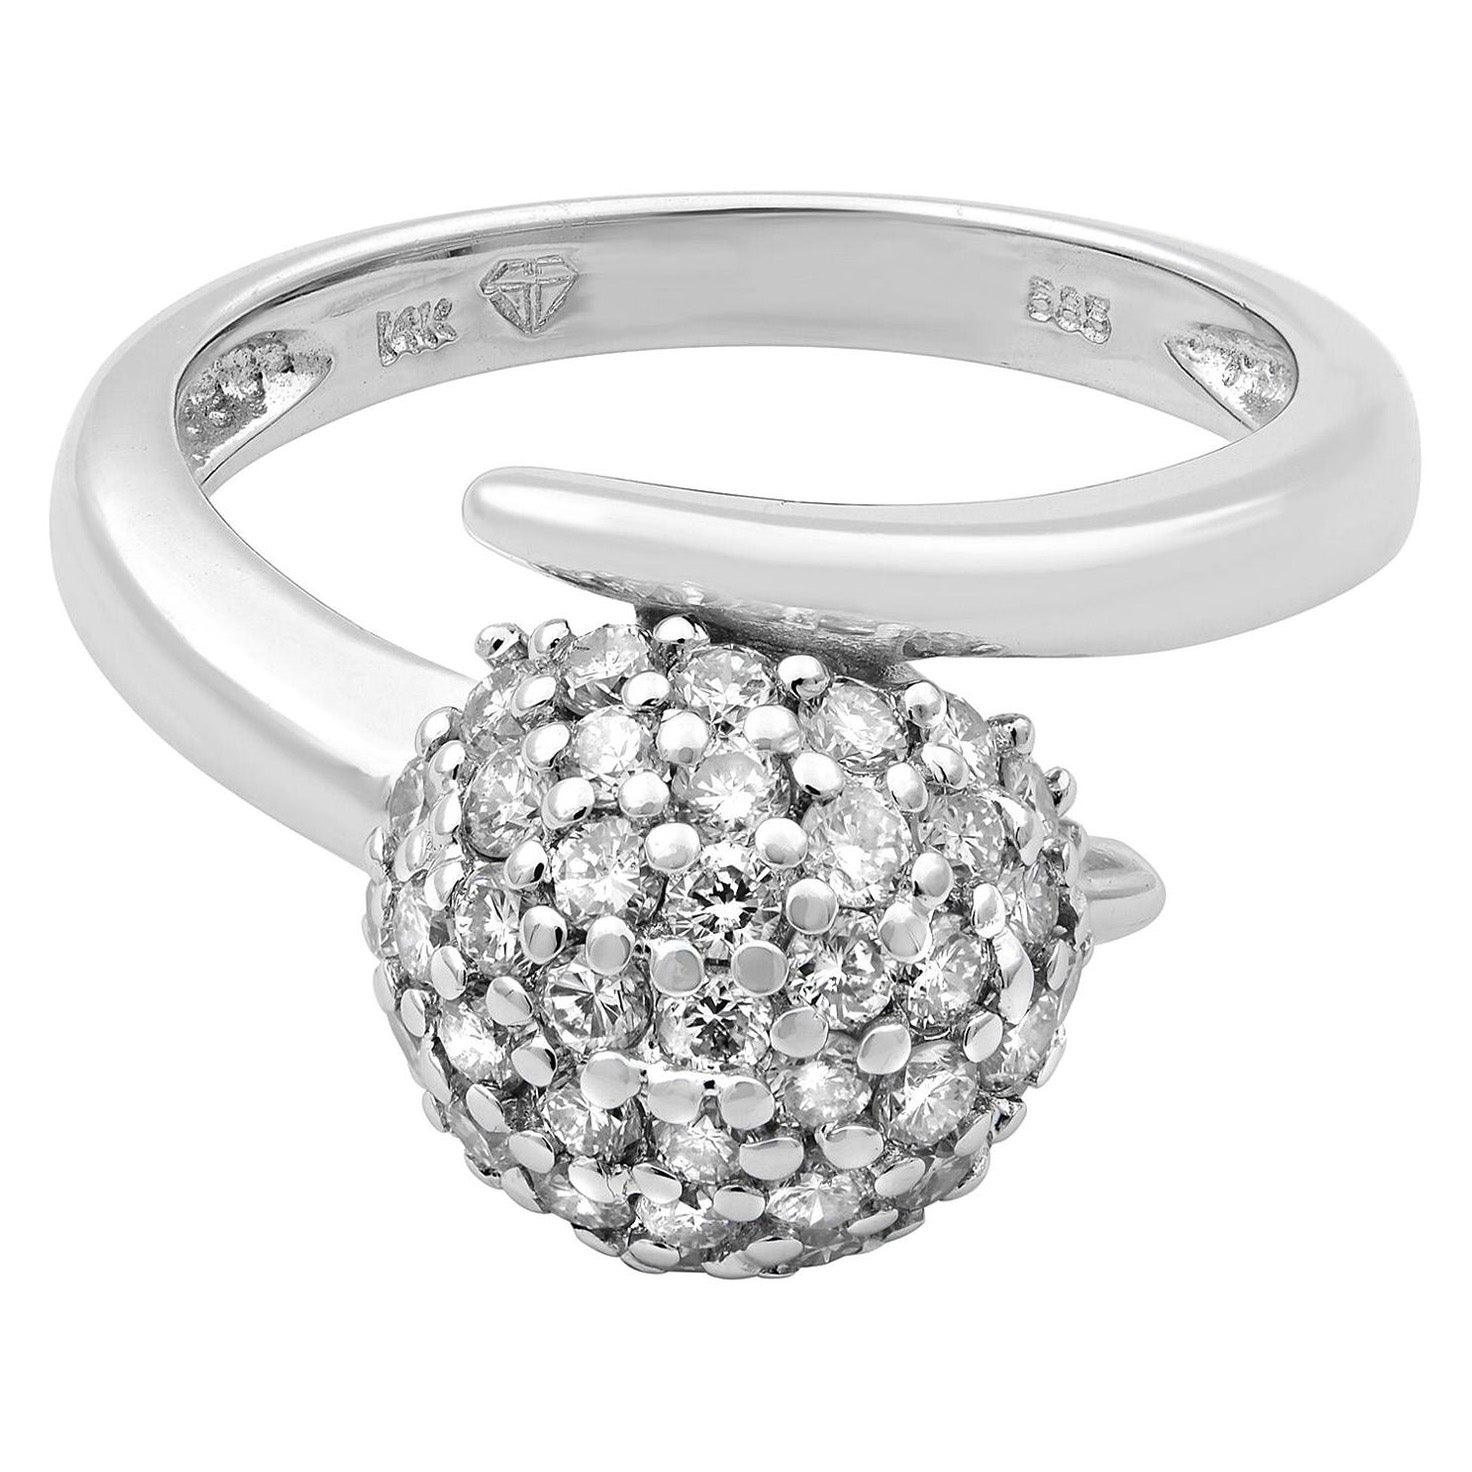 Rachel Koen Diamond Ball Ring 14K White Gold 0.40Cttw